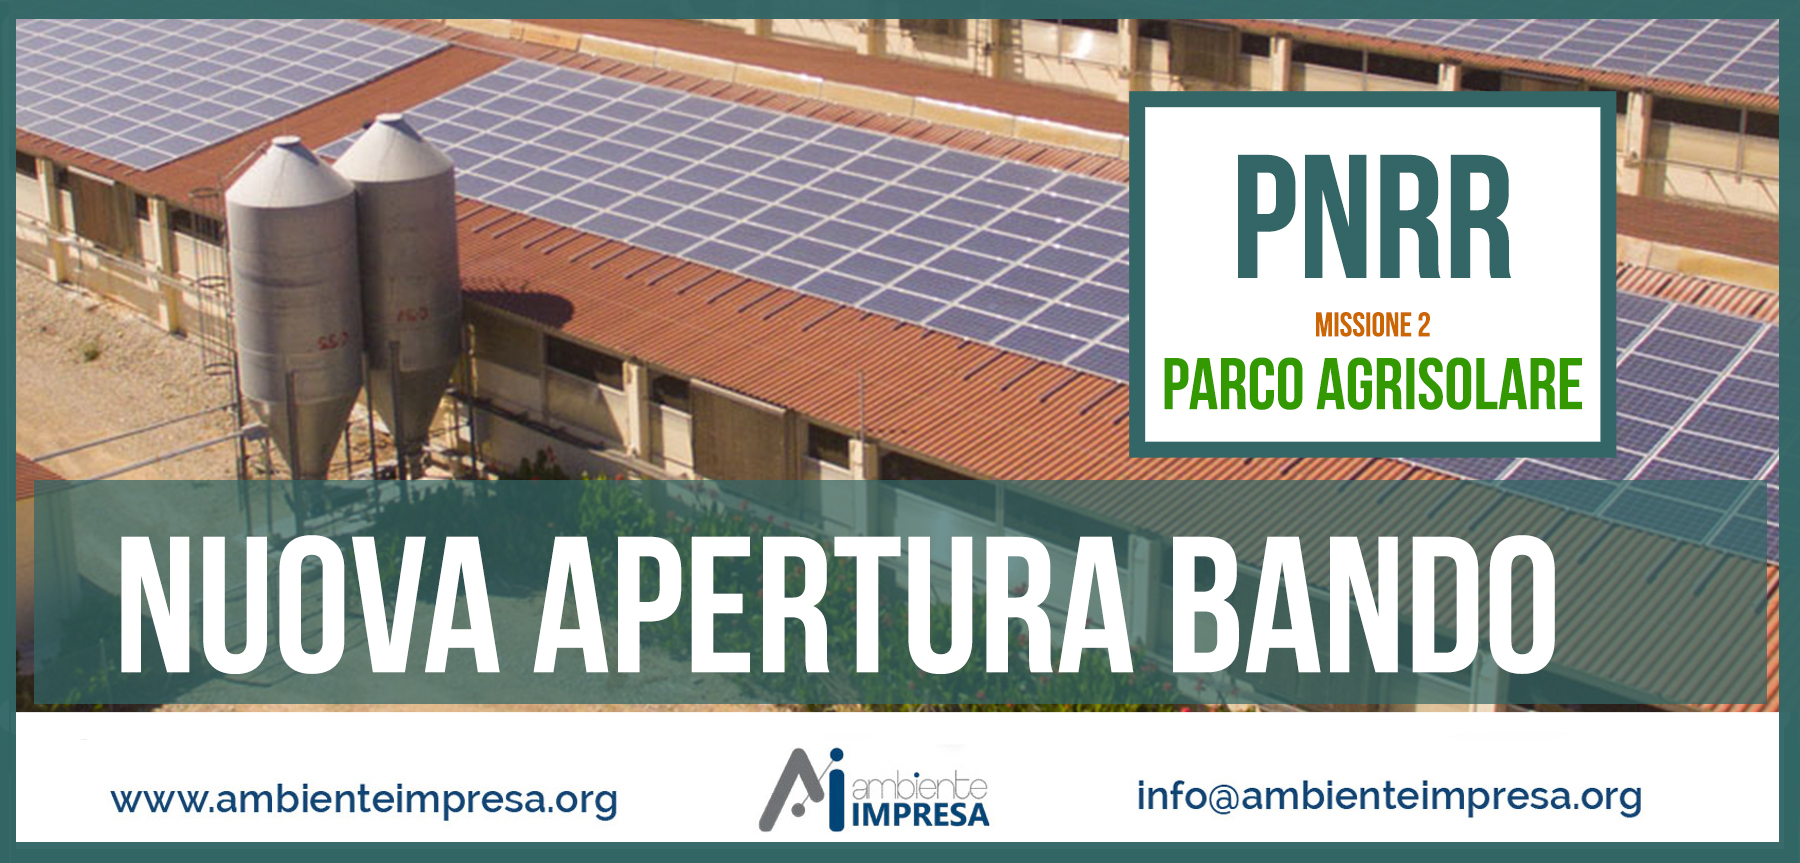 PNRR AGRISOLE - realizzazione di impianti fotovoltaici su edifici a uso produttivo nei settori agricolo, zootecnico e agroindustriale - Ambiente Impresa srl - Cagliari